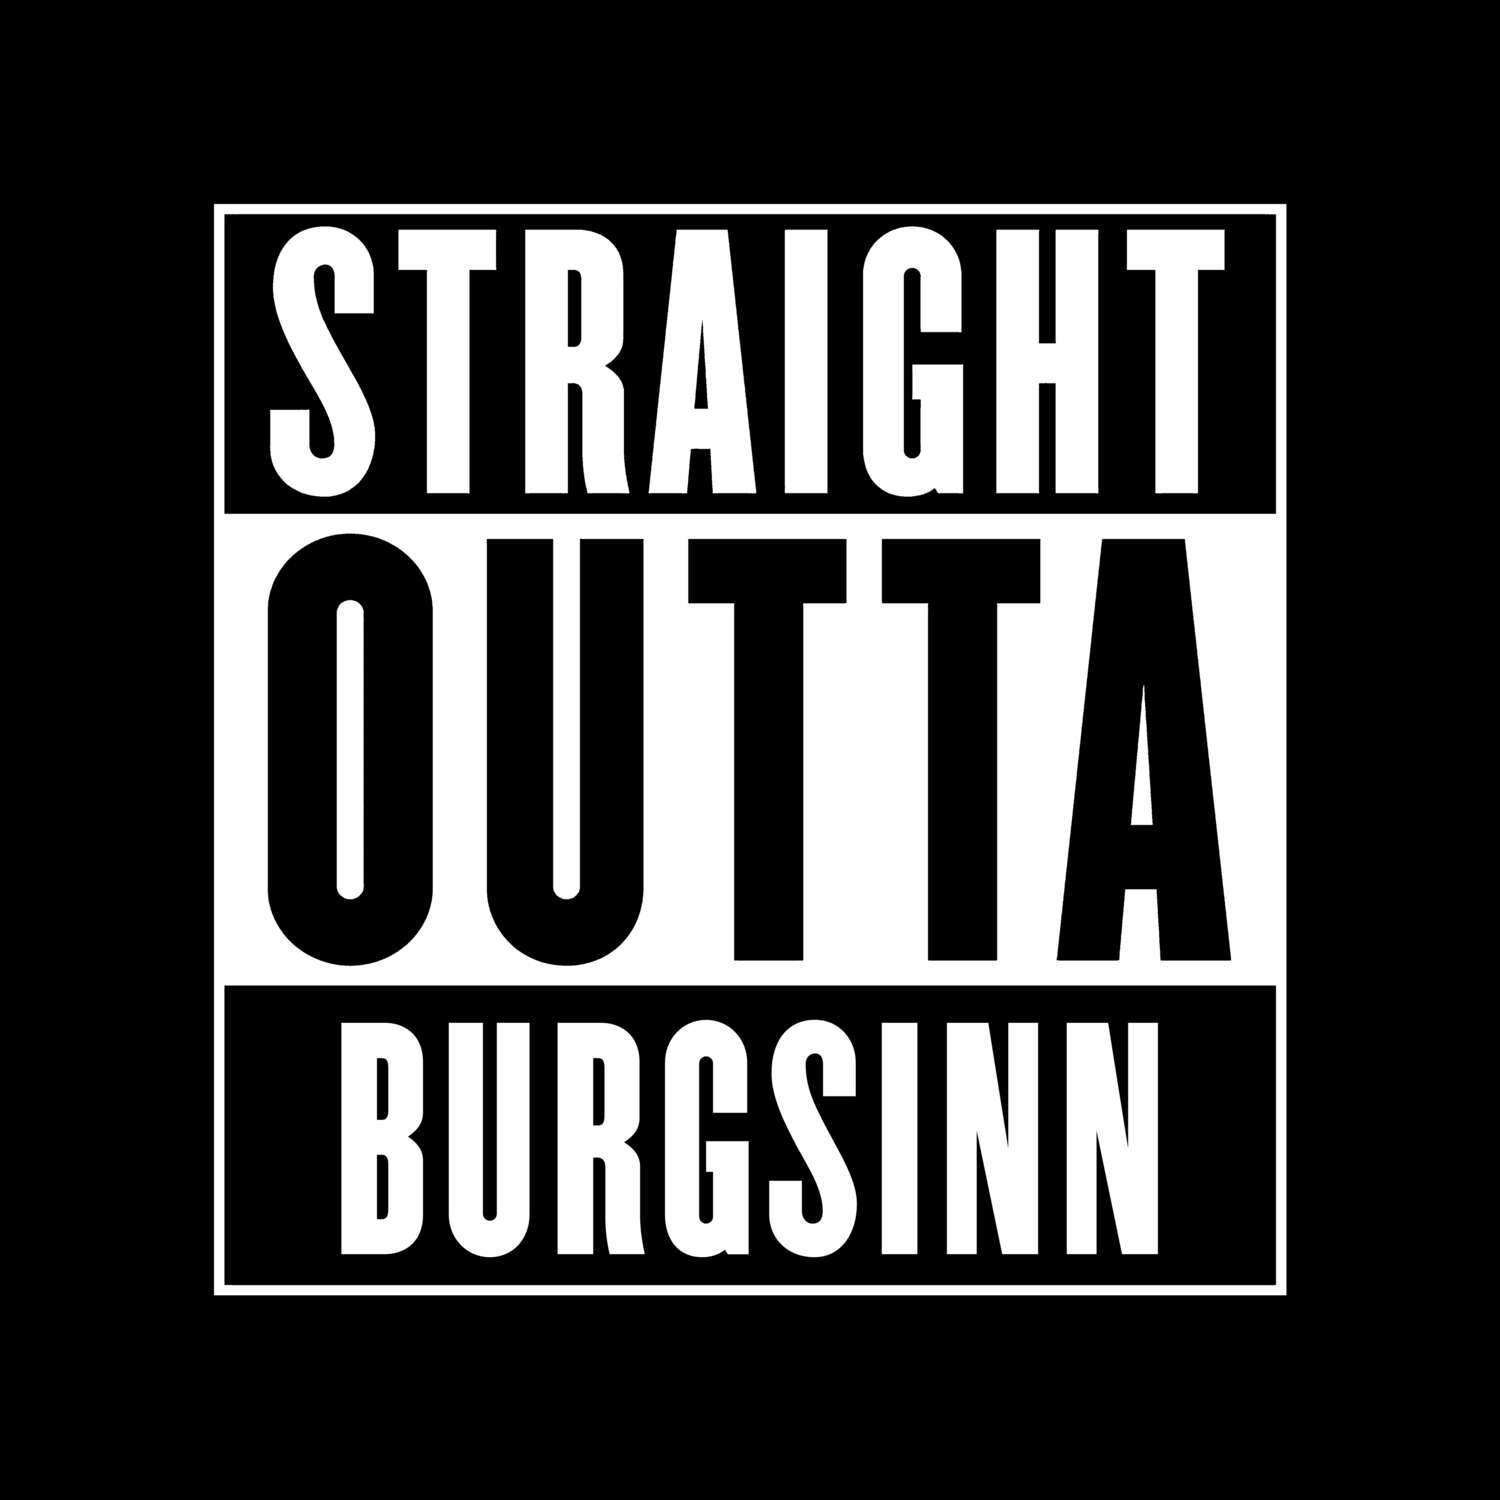 Burgsinn T-Shirt »Straight Outta«